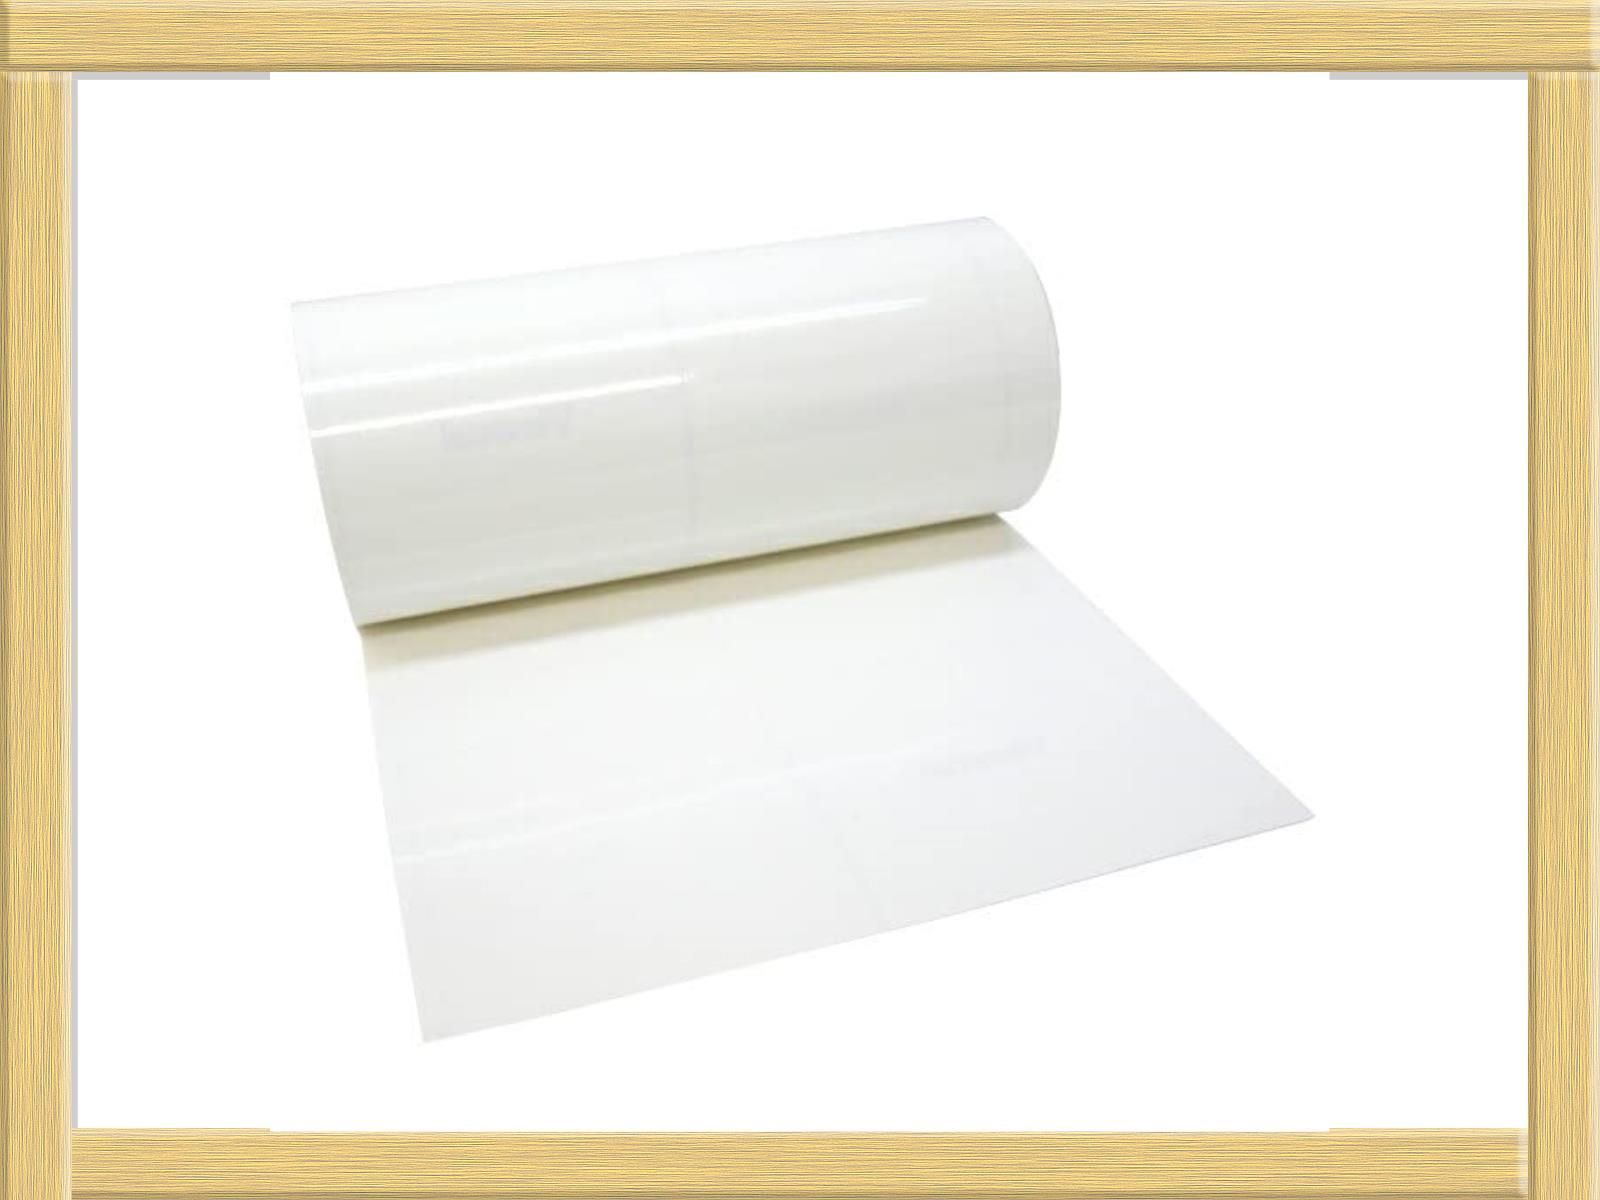 【色: 白】印刷工房 屋外5年カッティング用シート 200mm×5m 白ホワイト